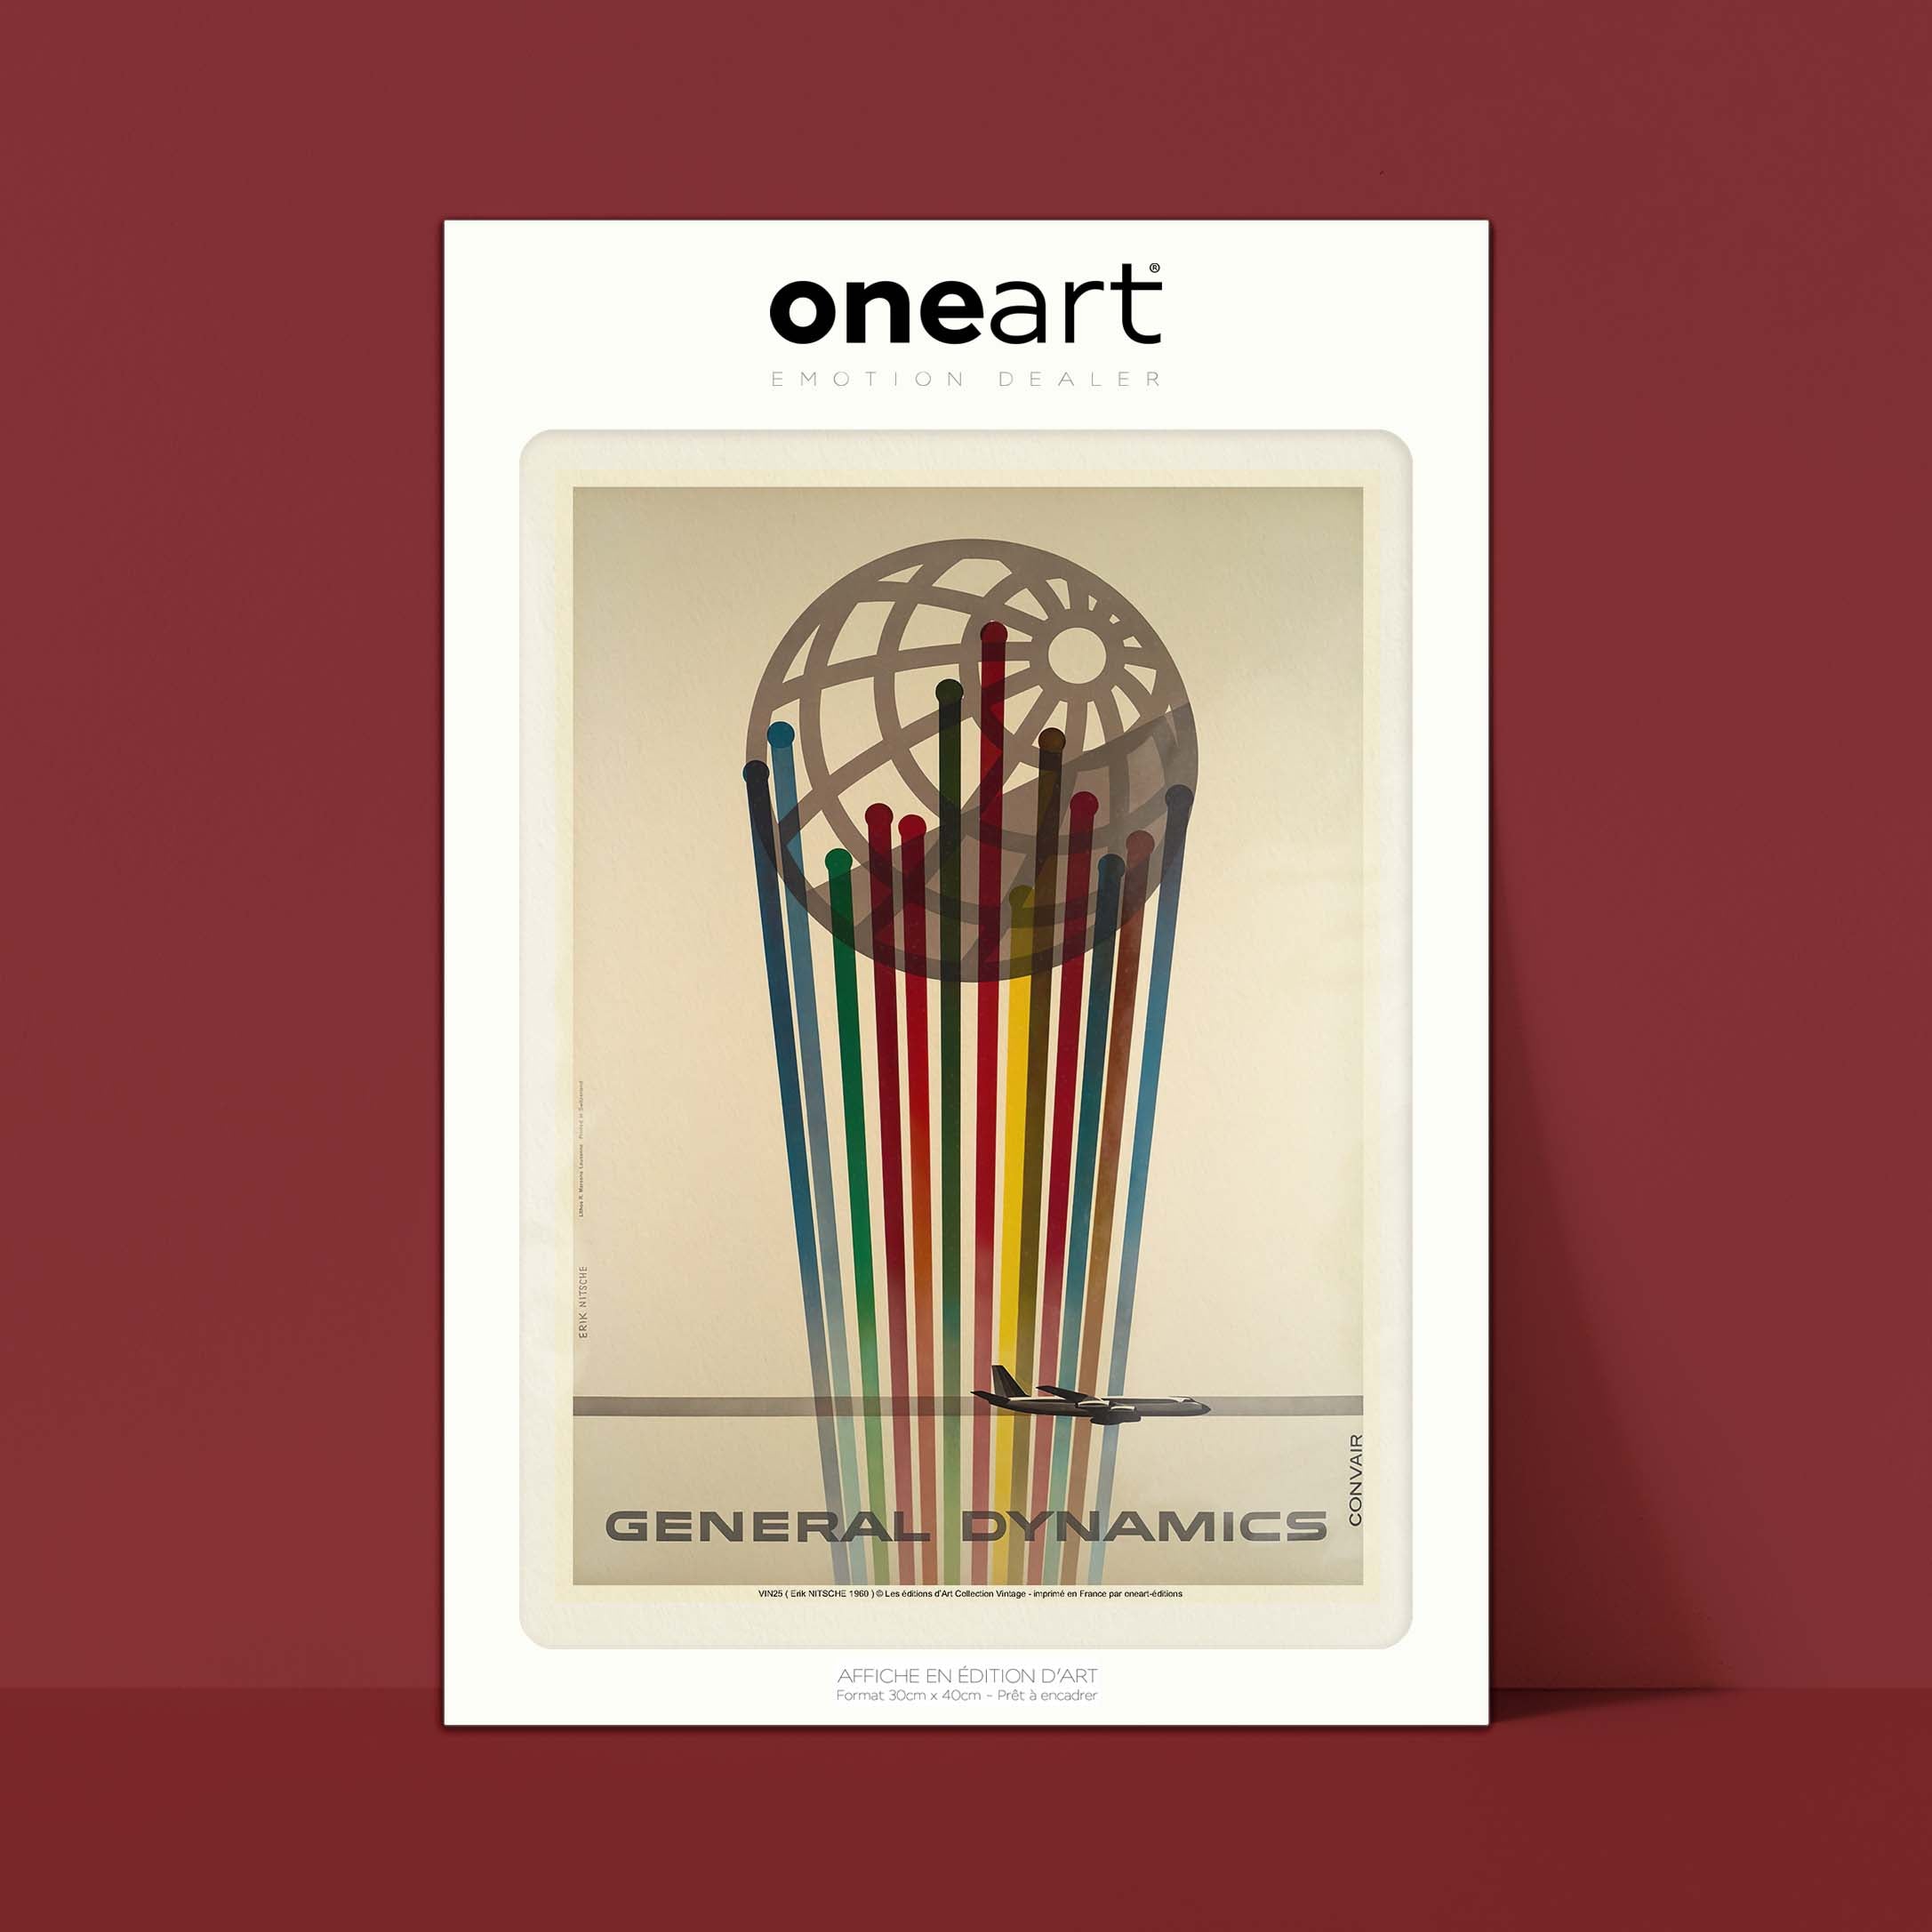 Affiche publicité vintage - General Dynamics Convair-oneart.fr